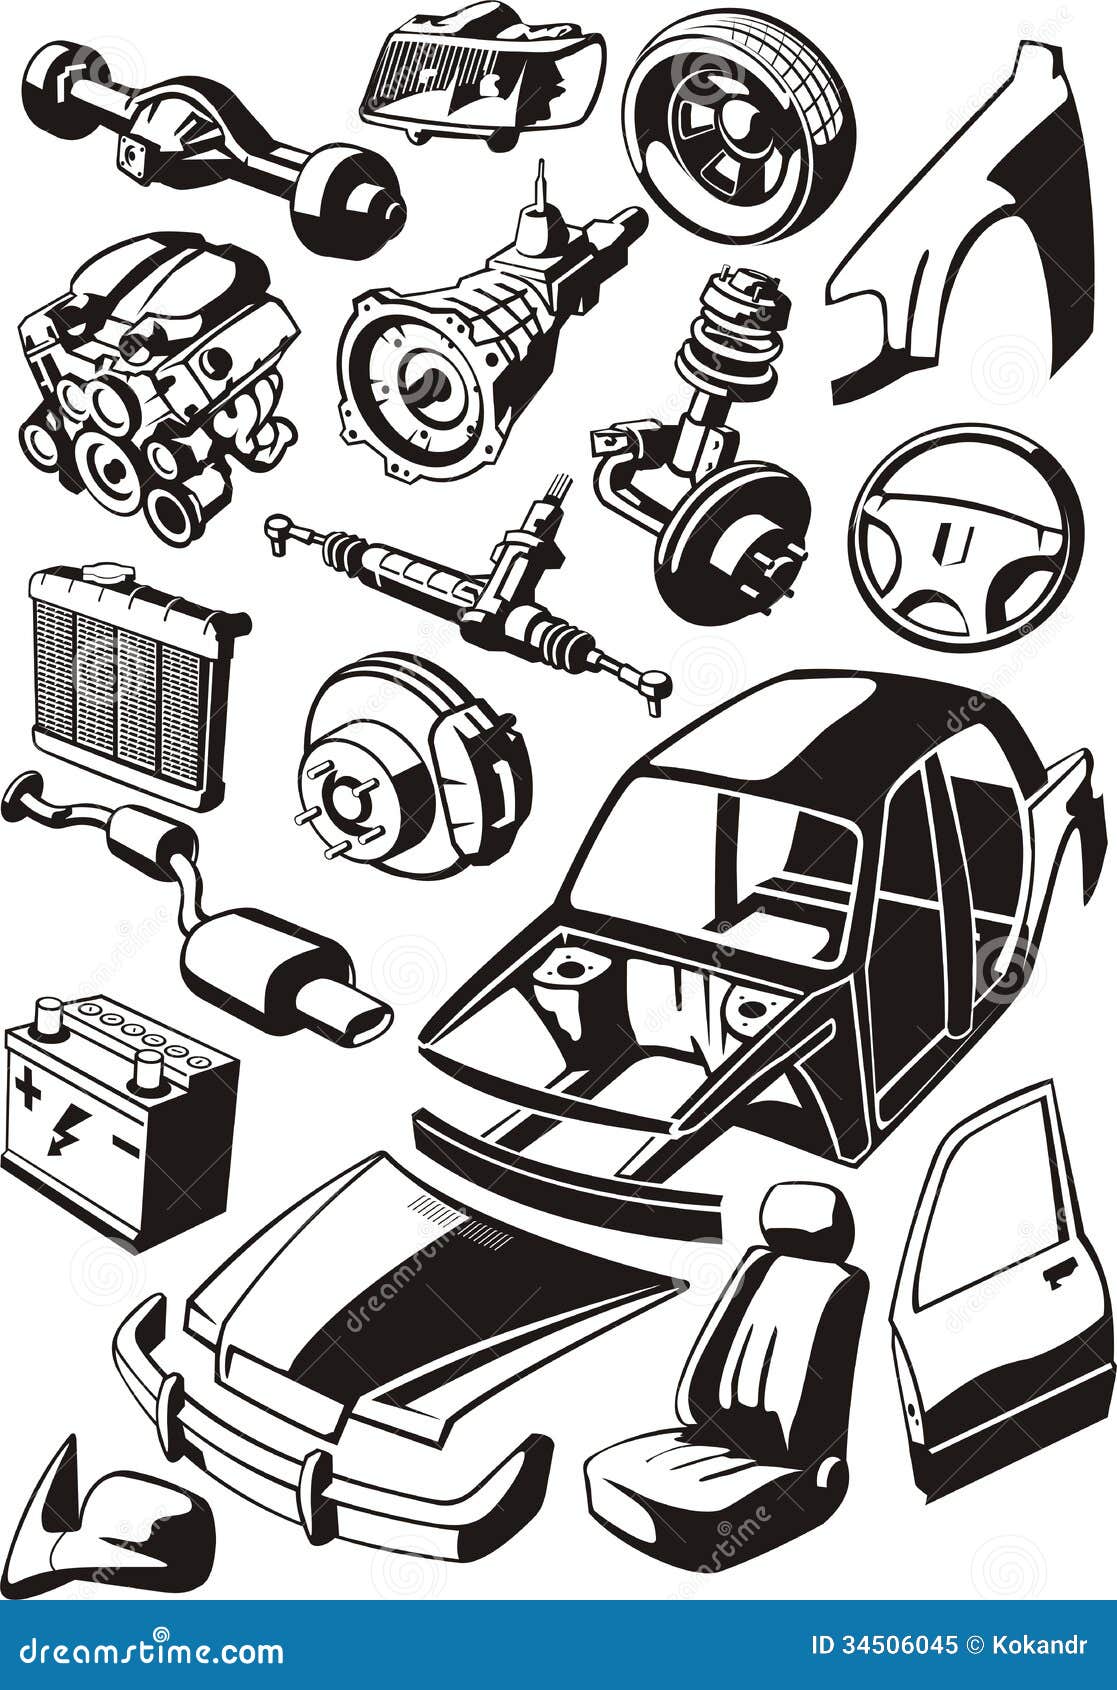 auto parts clip art - photo #3